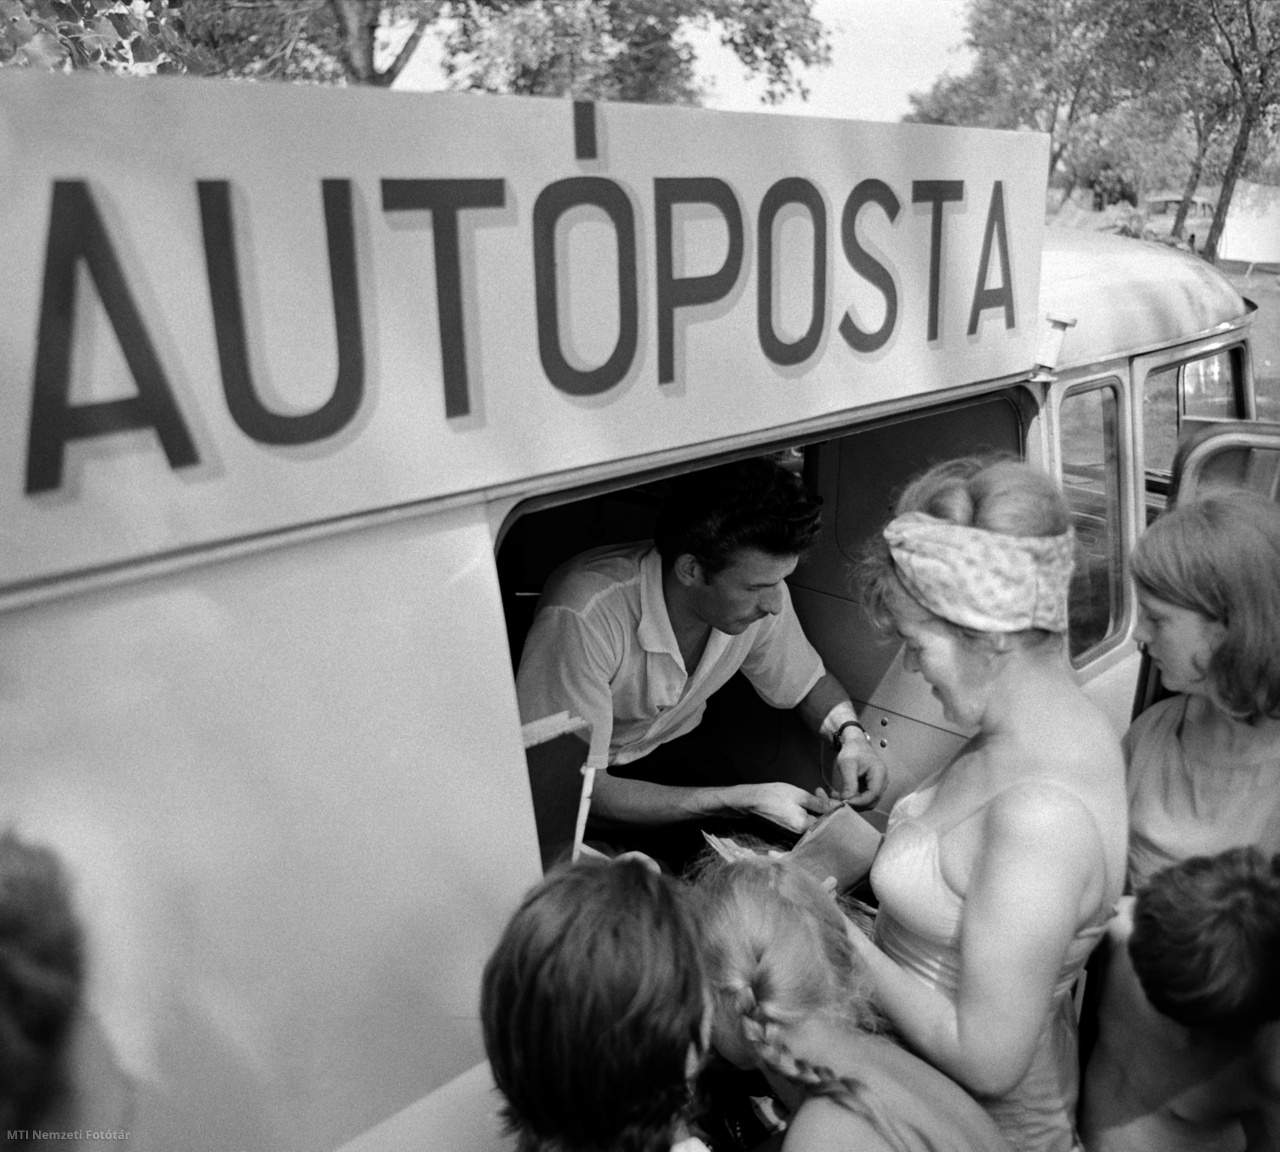 Magyarország, 1965. július 21. Leveleket adnak fel egy kempingben nyaralók a Magyar Posta új, keletnémet gyártmányú, Barkas B1000 típusú kisteherjárművében működő mozgó postahivatalánál. Az úgynevezett autóposta a balatoni kempingezők eddigi levelezési gondjain segít. A jármű mindennap meglátogatja a lakott területektől távol eső sátortáborokat, és gondoskodik arról, hogy a nyaralók üdvözlőlapjai késedelem nélkül eljuthassanak a címzettekhez. Az autóposta magyar és külföldi kiadású újságokat és képeslapokat is árusít. A felvétel készítésének pontos helye ismeretlen.